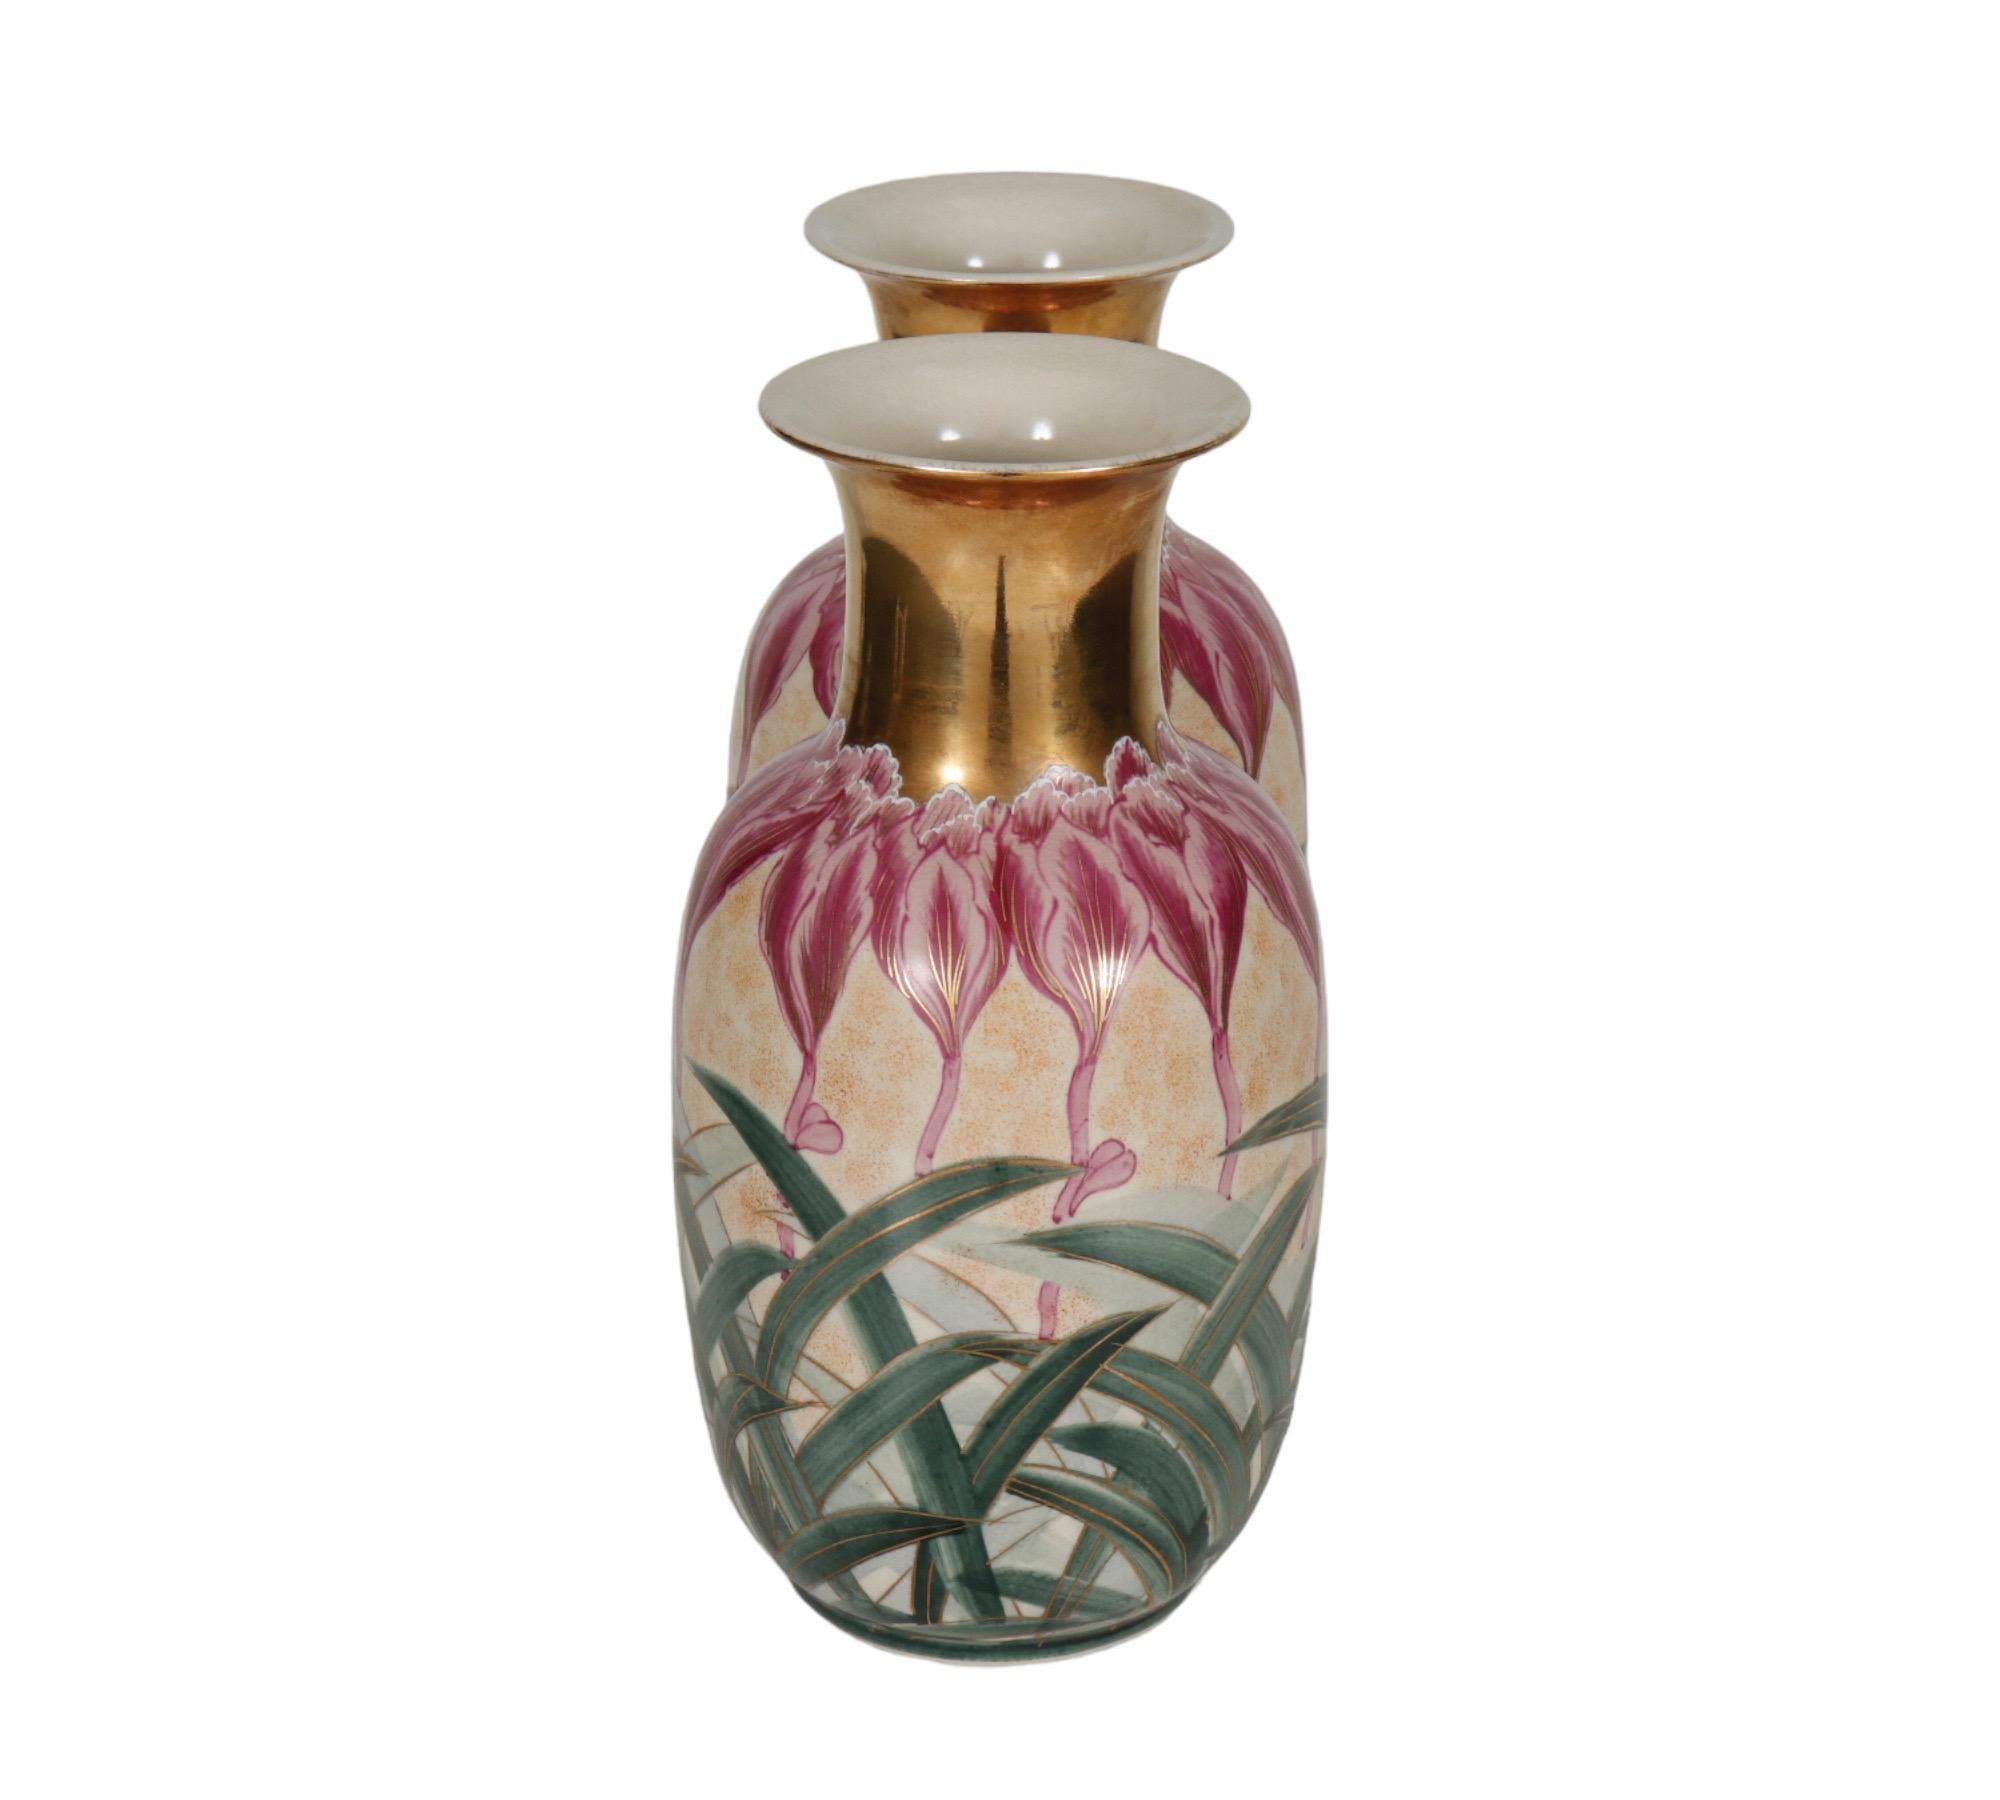 Ein Paar japanischer Keramikvasen, importiert von Toyo und mit dem Label Katuni/Satsuma versehen. Handbemalt im Jugendstil, mit grünen Grashalmen um den Sockel und rosa Krokussen mit weißer Spitze, die bis zu den Hälsen der Vasen reichen. Blumen und